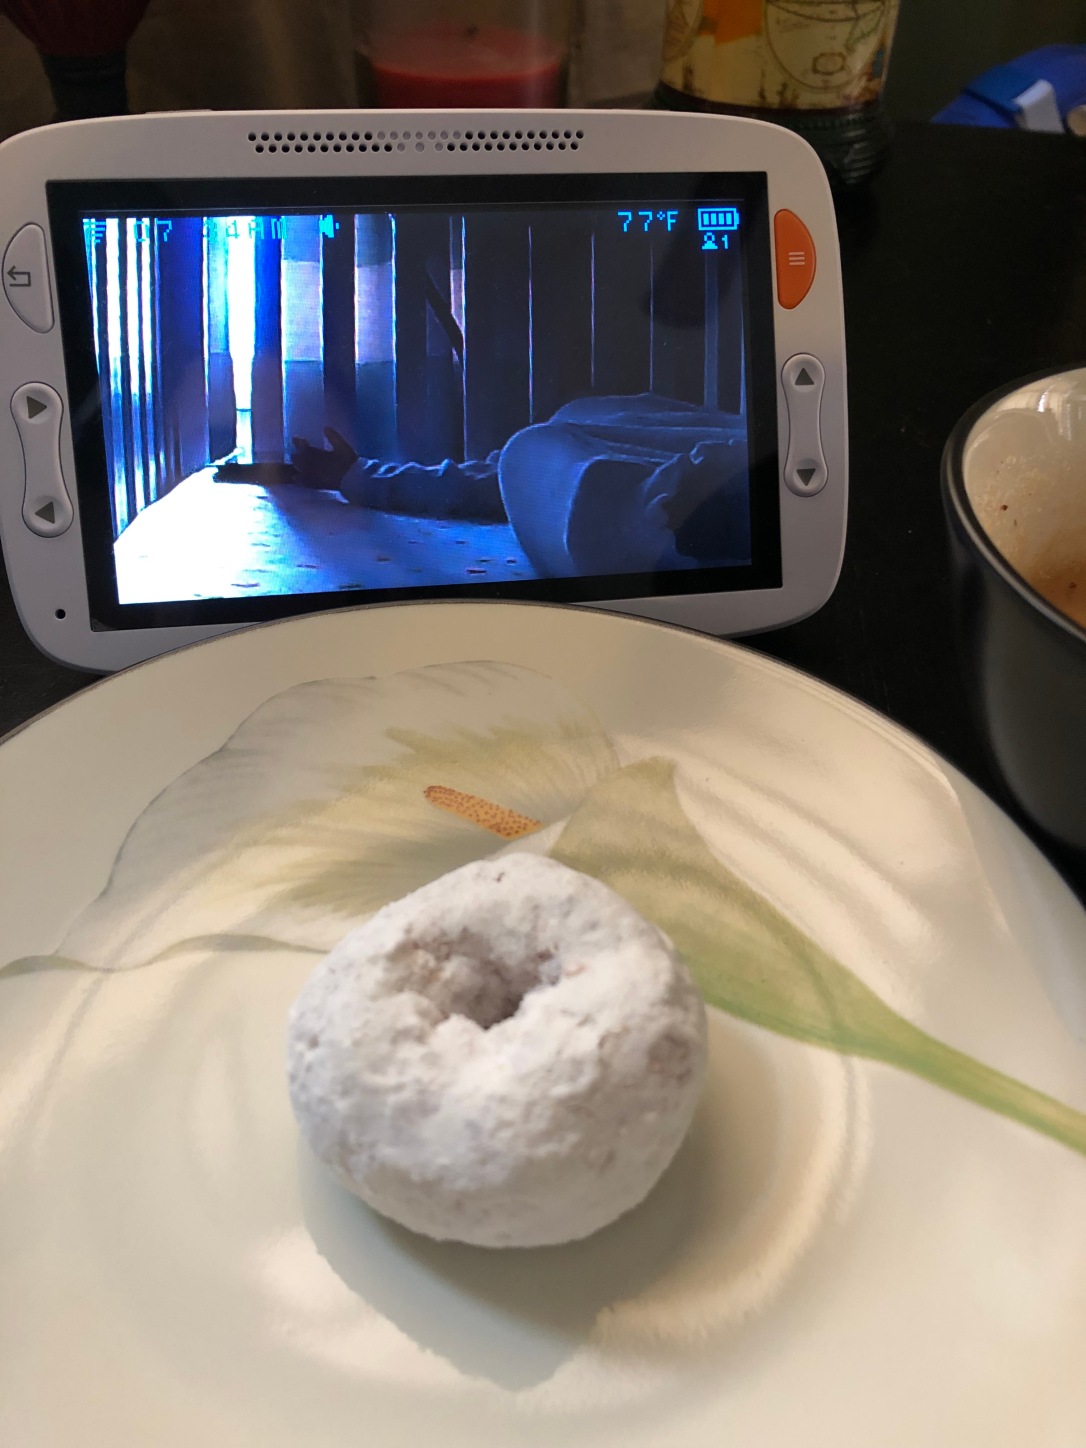 tatsykake powdered sugar mini donut